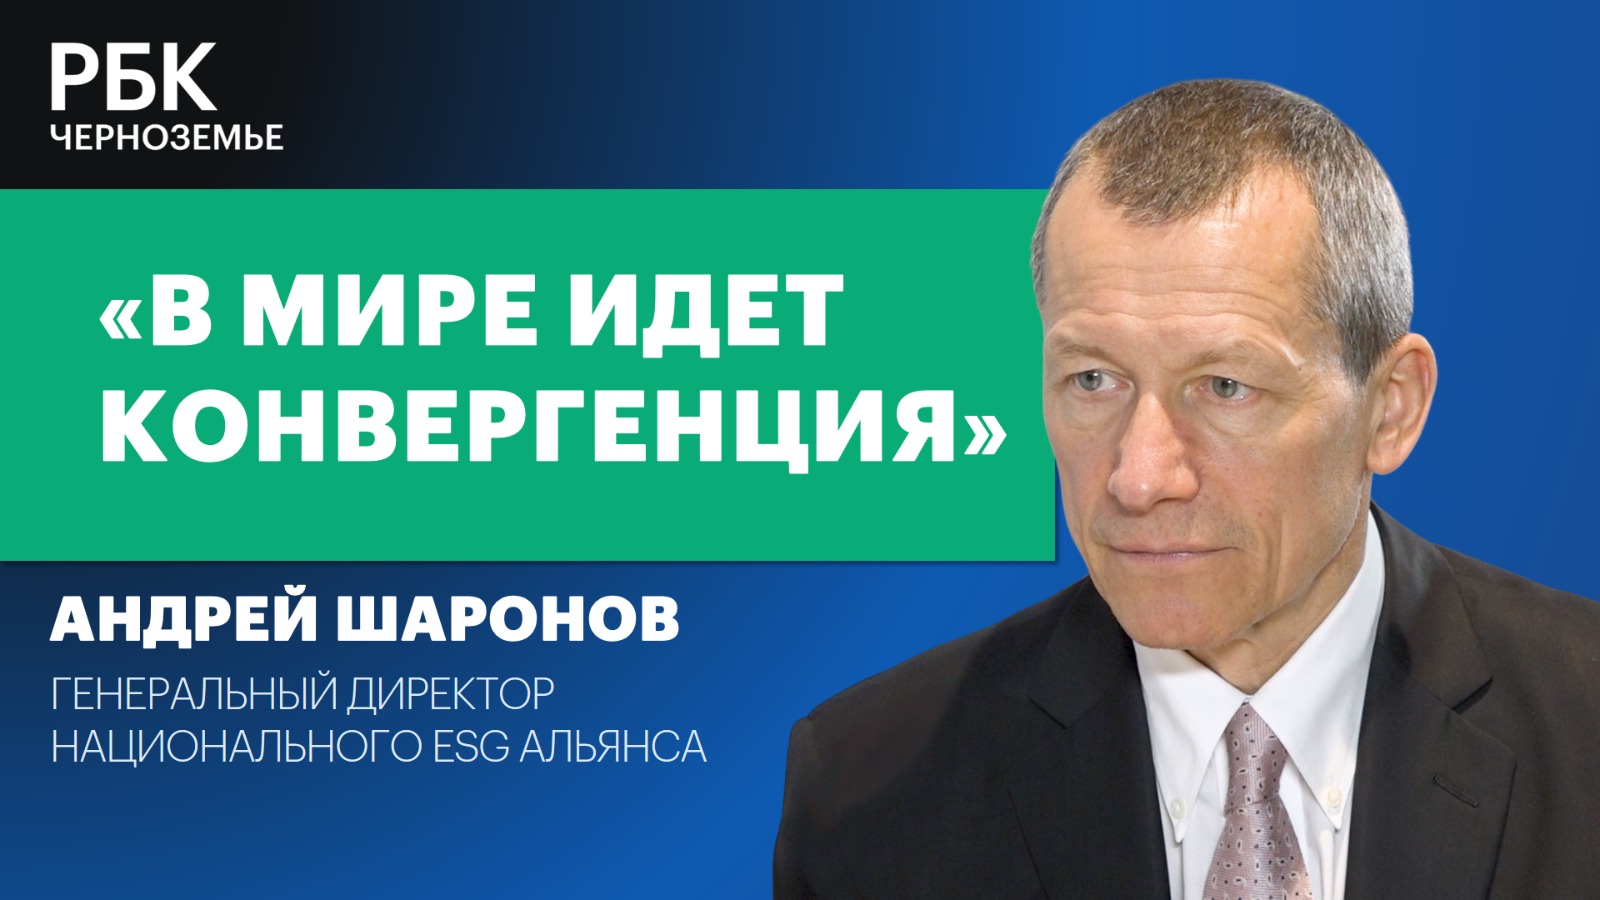 Андрей Шаронов: «В мире идет конвергенция»